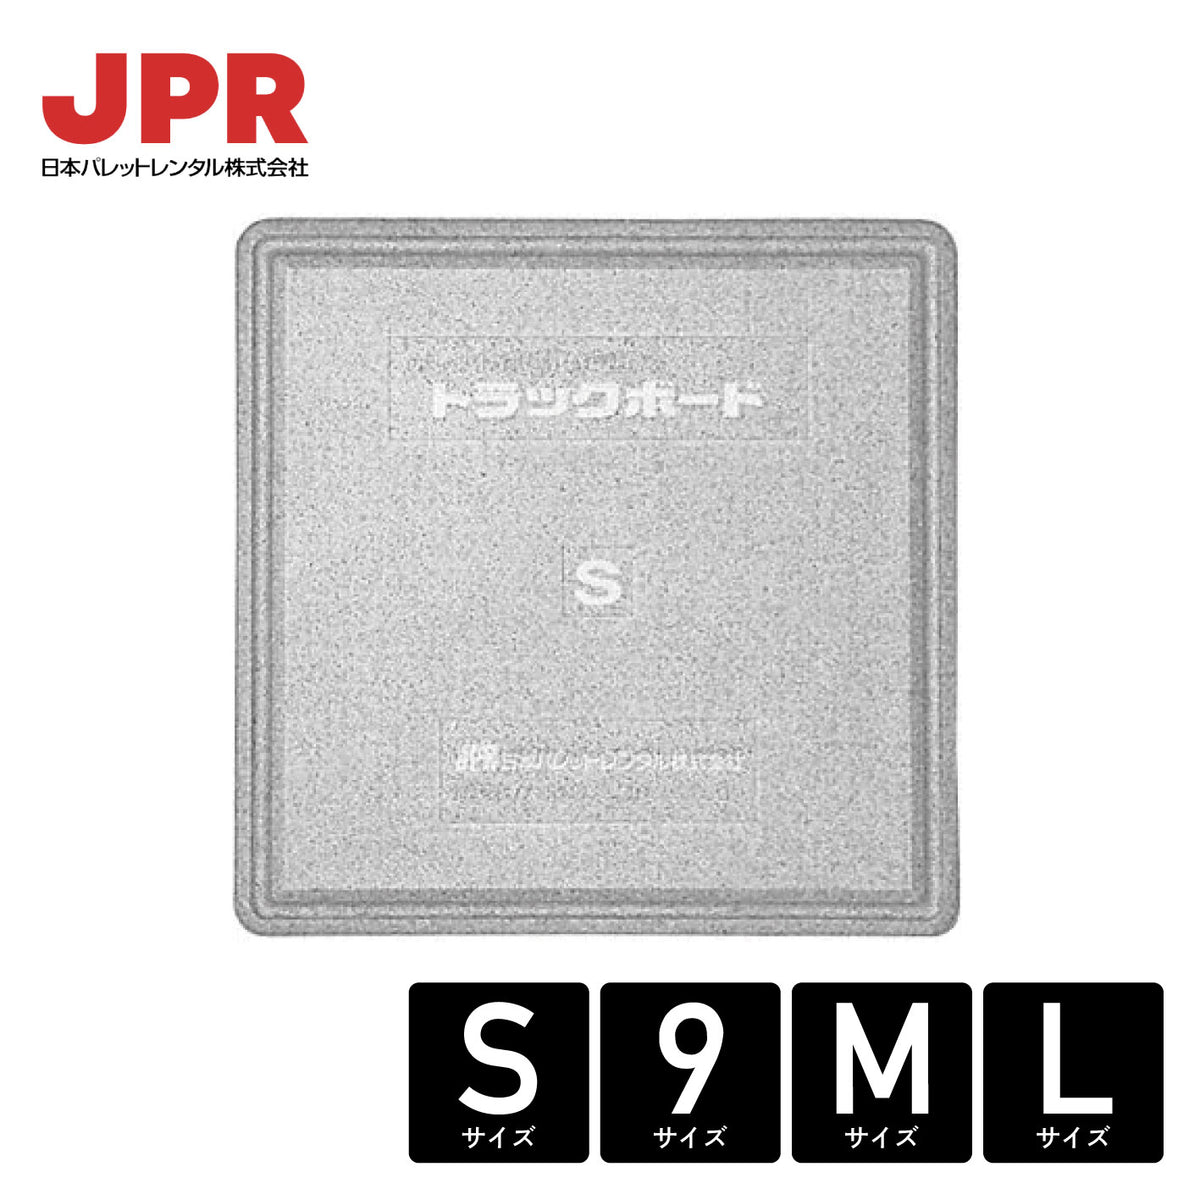 日本パレットレンタル(株) JPRトラックボード サイズ各種 – ヨロスト。